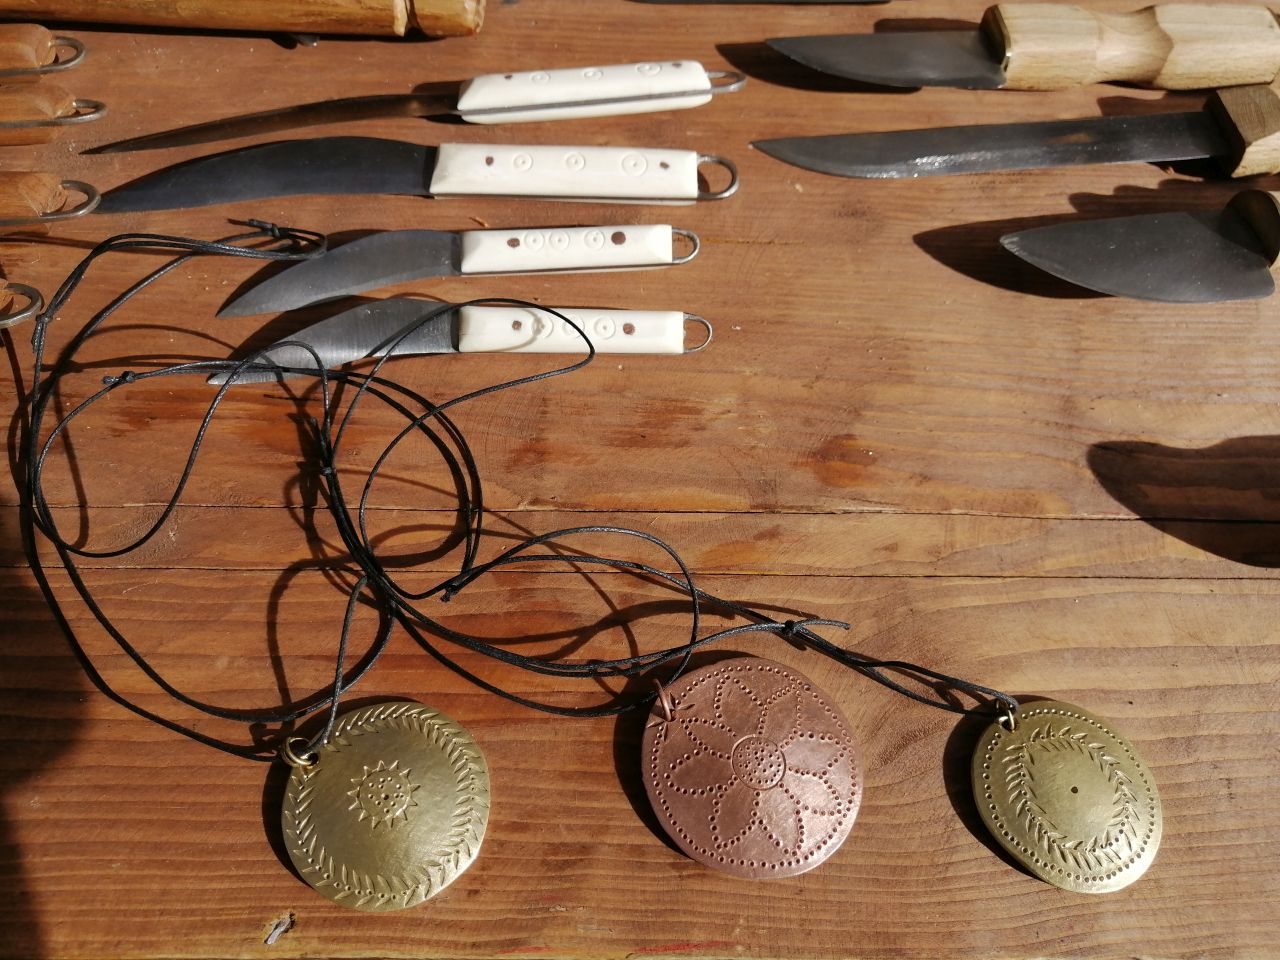 Gebrauchsmesser (Culteli) und Amulette, hergestellt in Handarbeit.